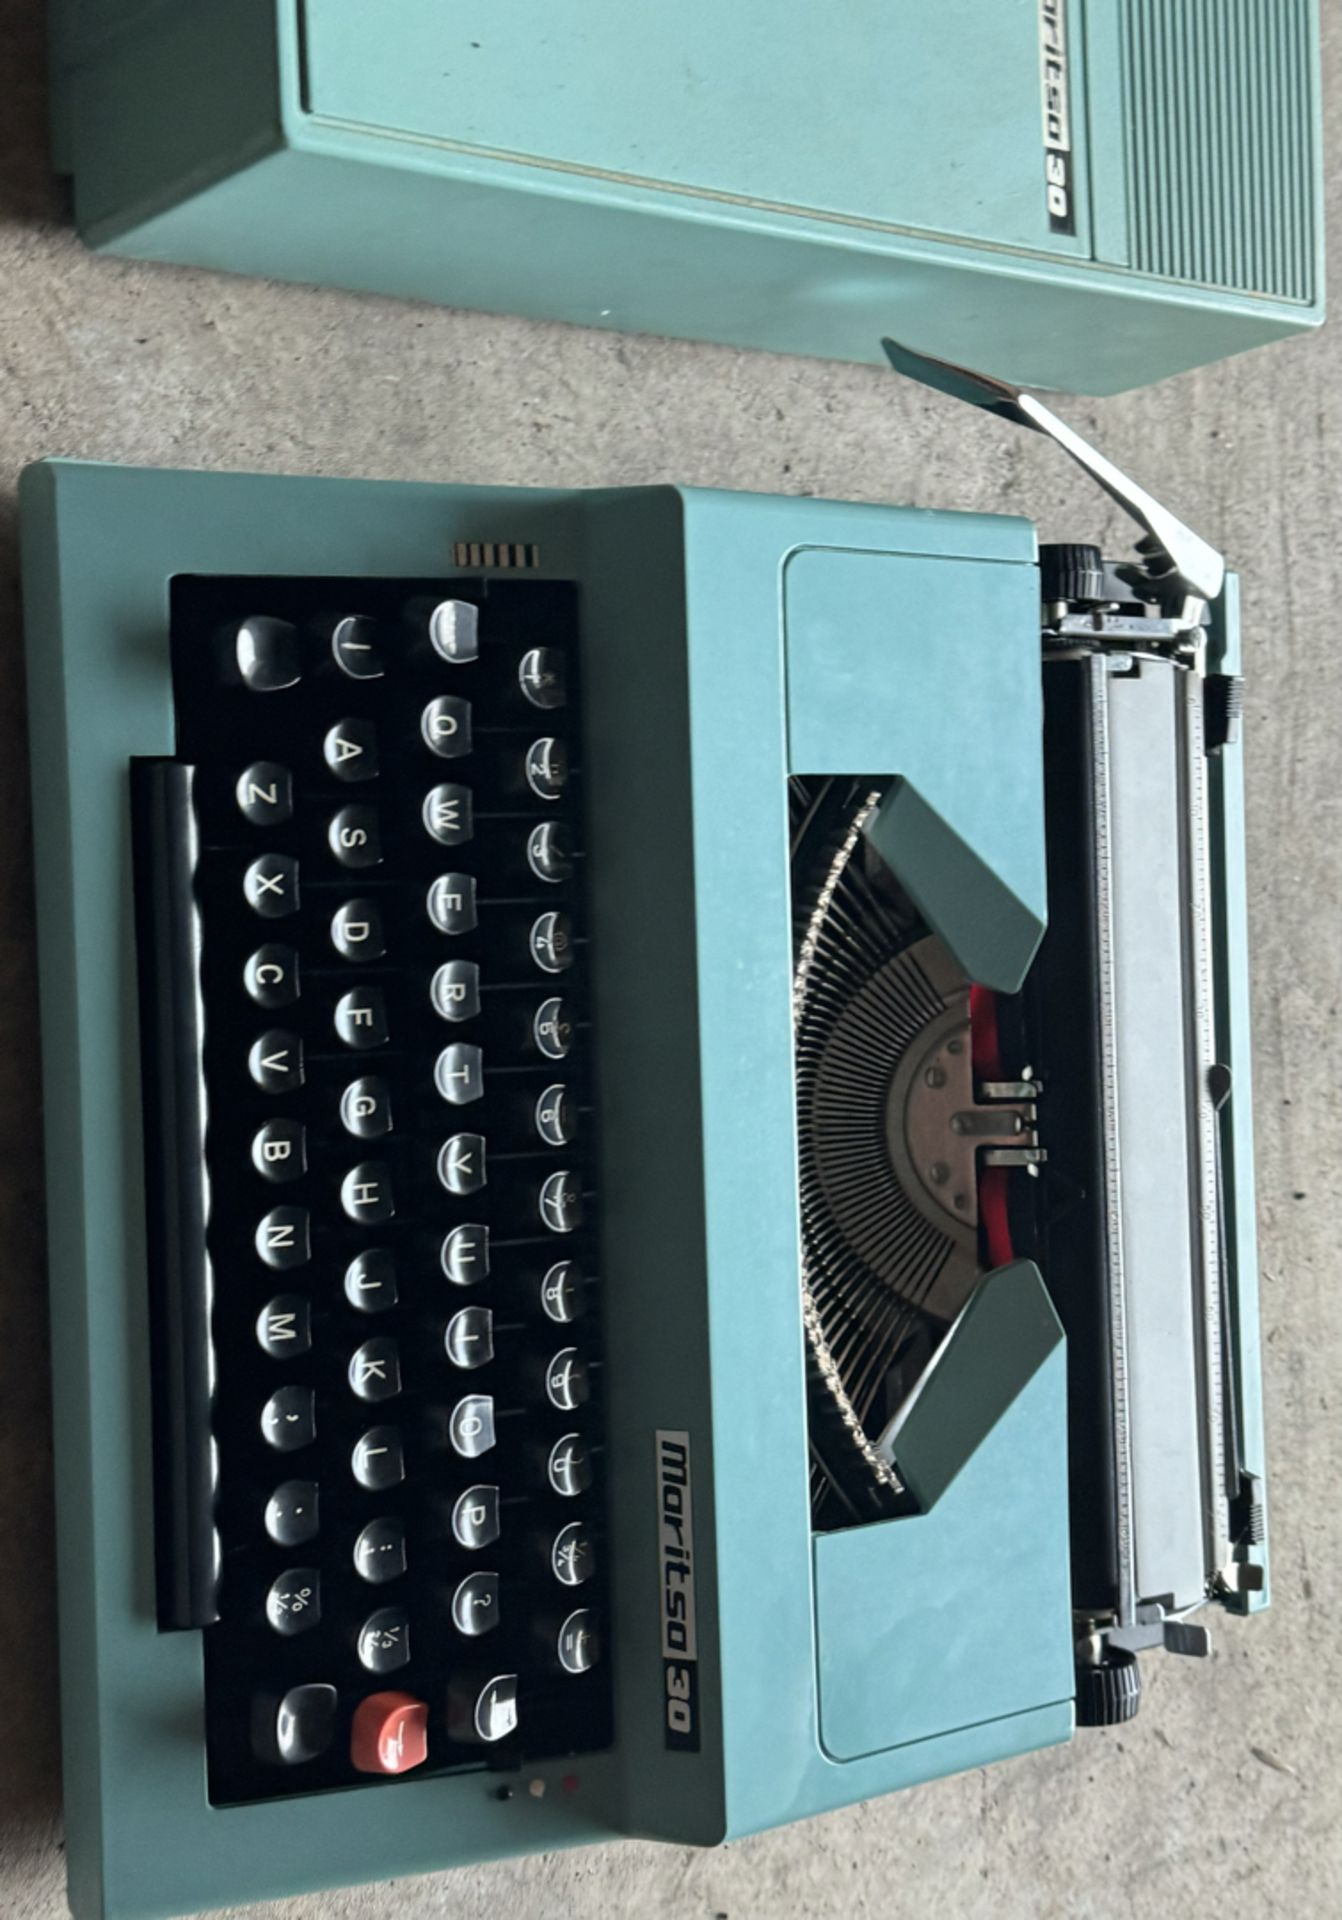 Vintage Blue Maritsa 30 Portable Typewriter in Case - Workshop Find, Untested - Image 3 of 3